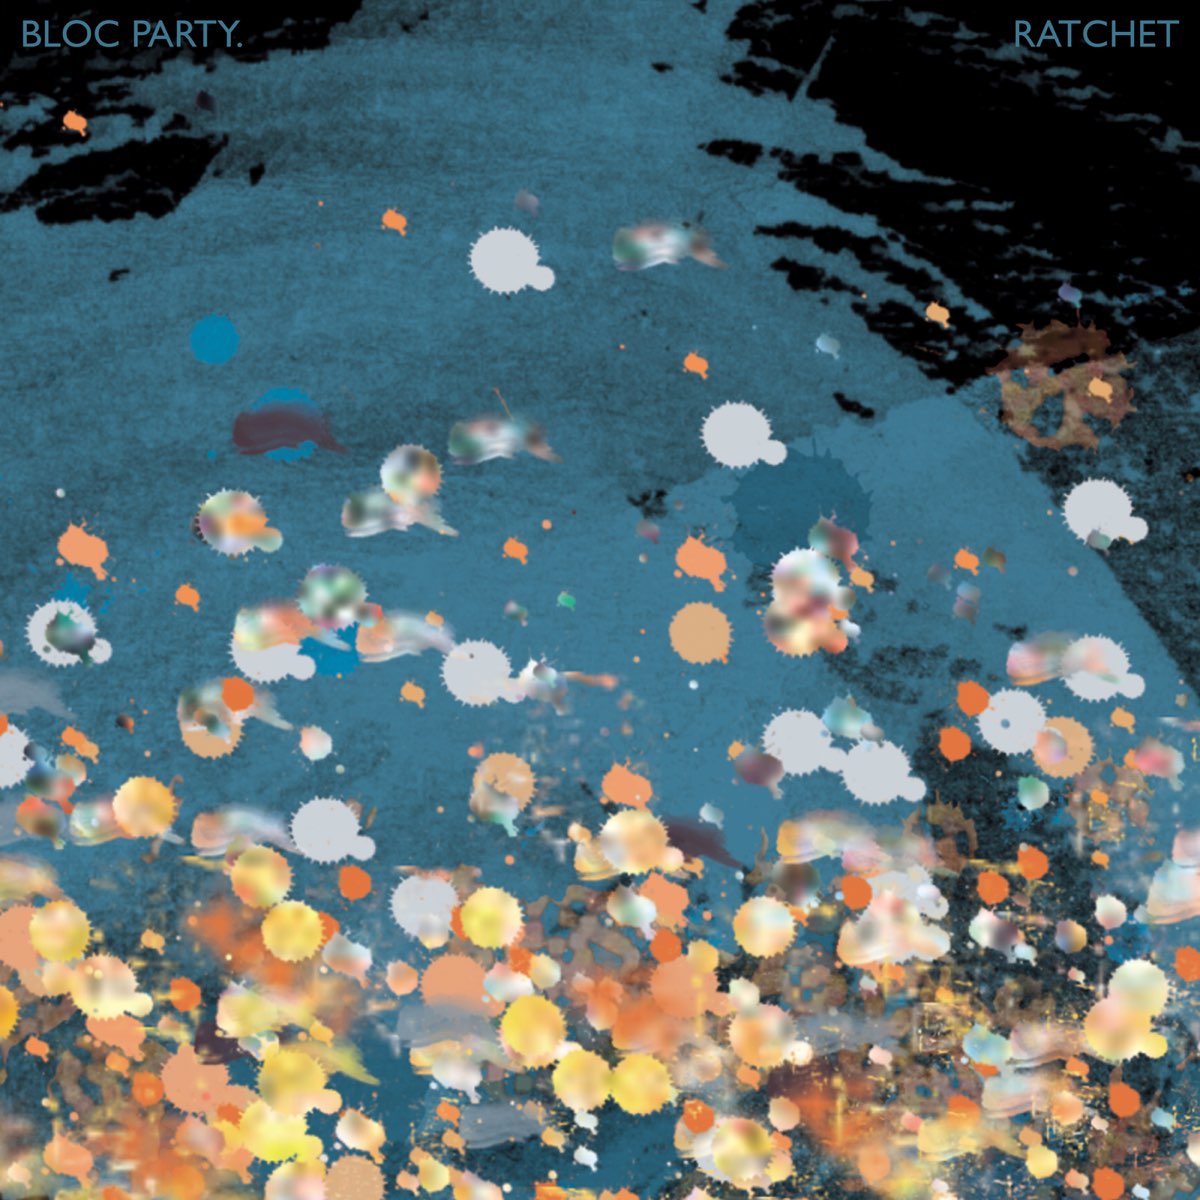 Bloc Party — Ratchet cover artwork